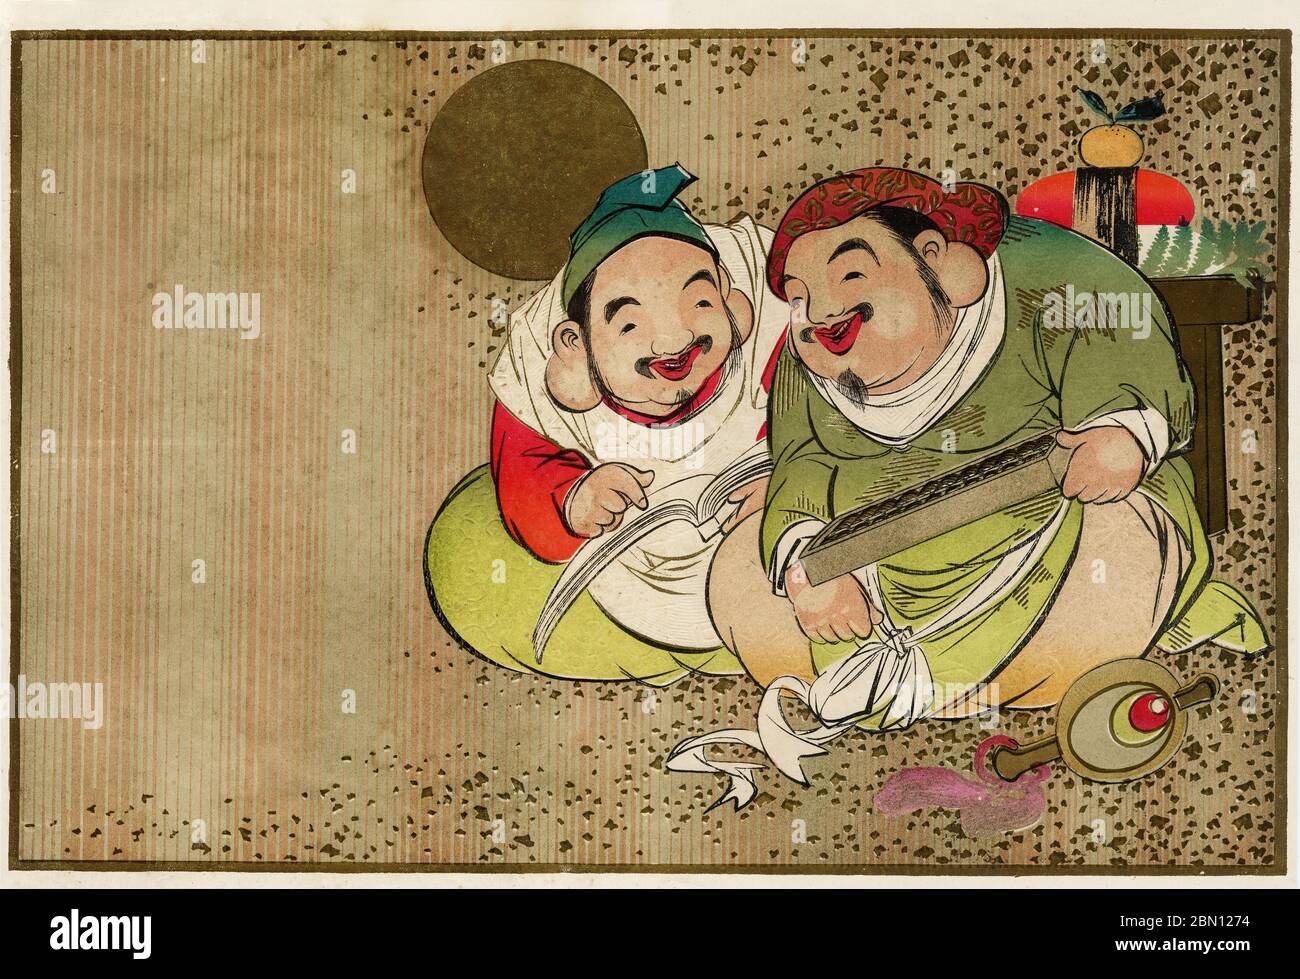 [ 1930er Jahre Japan - Japanische Glücksgötter ] - Hikifuda (引札), ein Print, der von lokalen Geschäften als Werbeflyer verwendet wird. Sie waren von den 1800er bis in die 1920er Jahre populär. Die Grafik zeigt Daikokuten (大黒天, rechts) und Ebisu (恵比寿), zwei der Sieben Glücksgötter (七福神 Shichi Fukujin), die angeblich den Menschen Glück beschert haben. Sie waren ein wesentlicher Bestandteil der traditionellen japanischen Neujahrsfeiern. 20. Jahrhundert Vintage Werbung Flyer. Stockfoto